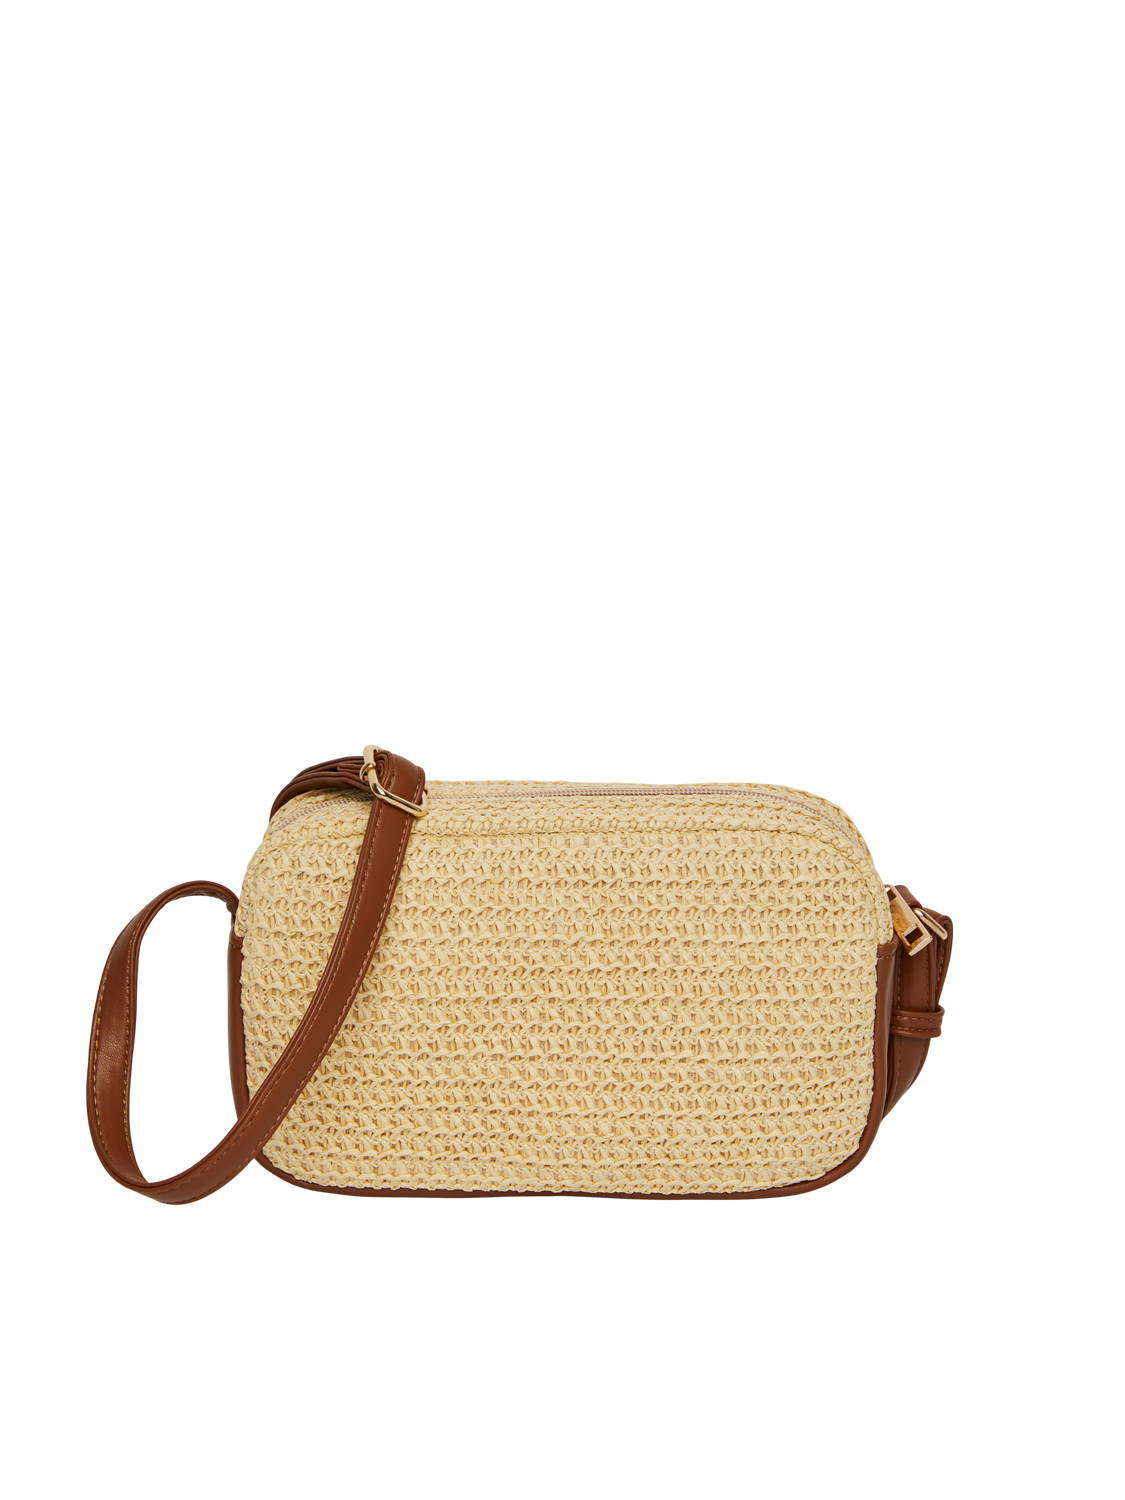 PCANITA Handbag - Nature/Brown